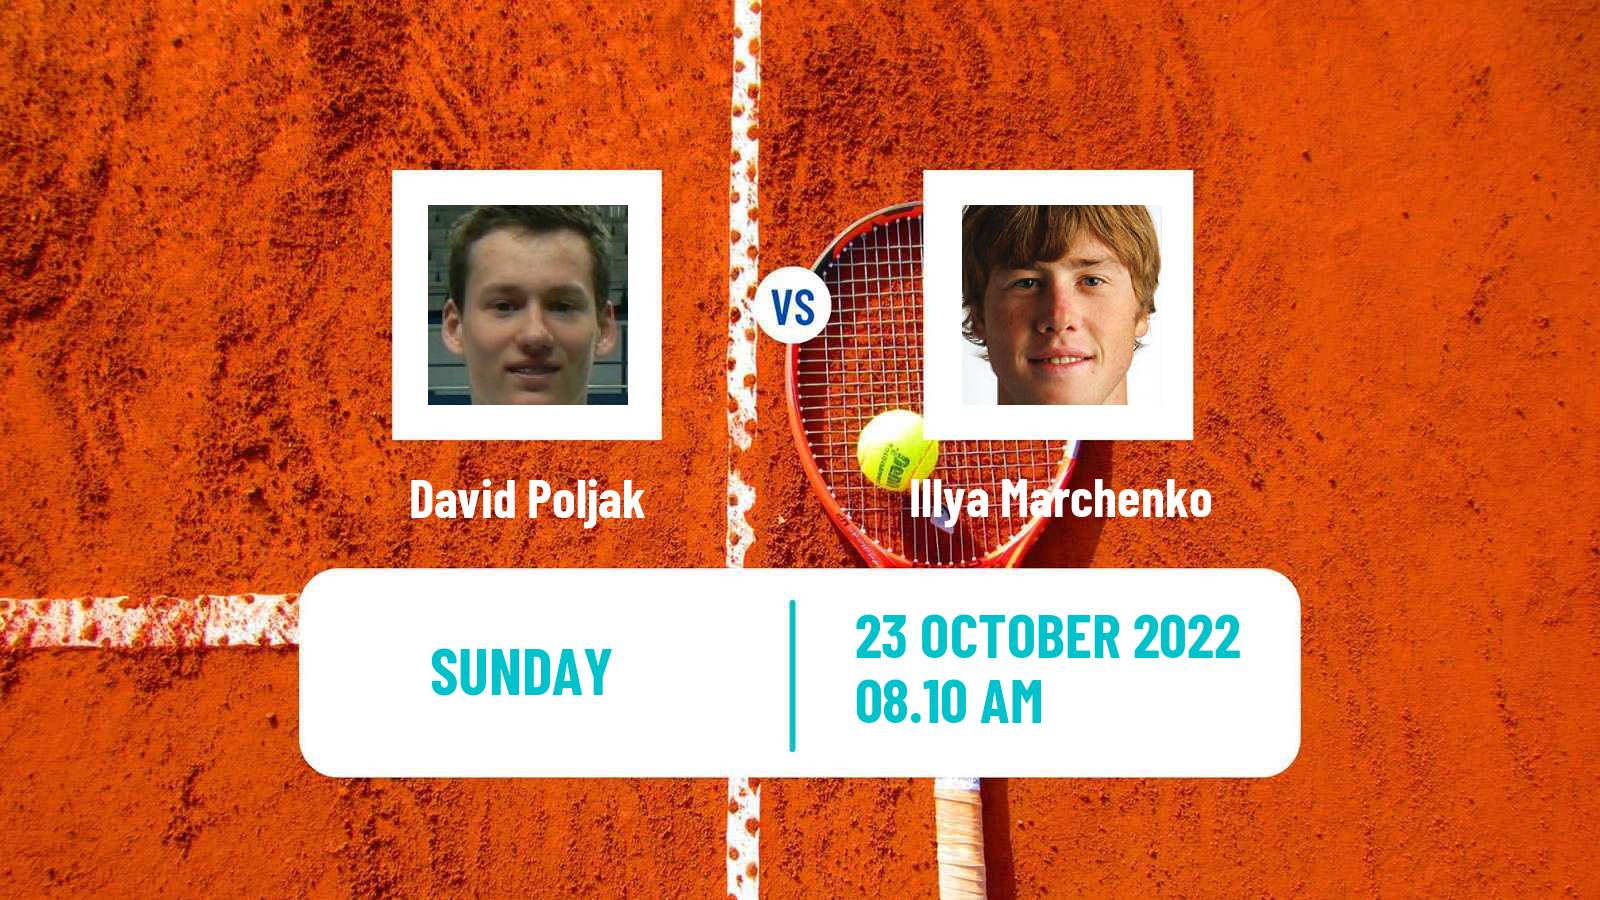 Tennis ATP Challenger David Poljak - Illya Marchenko